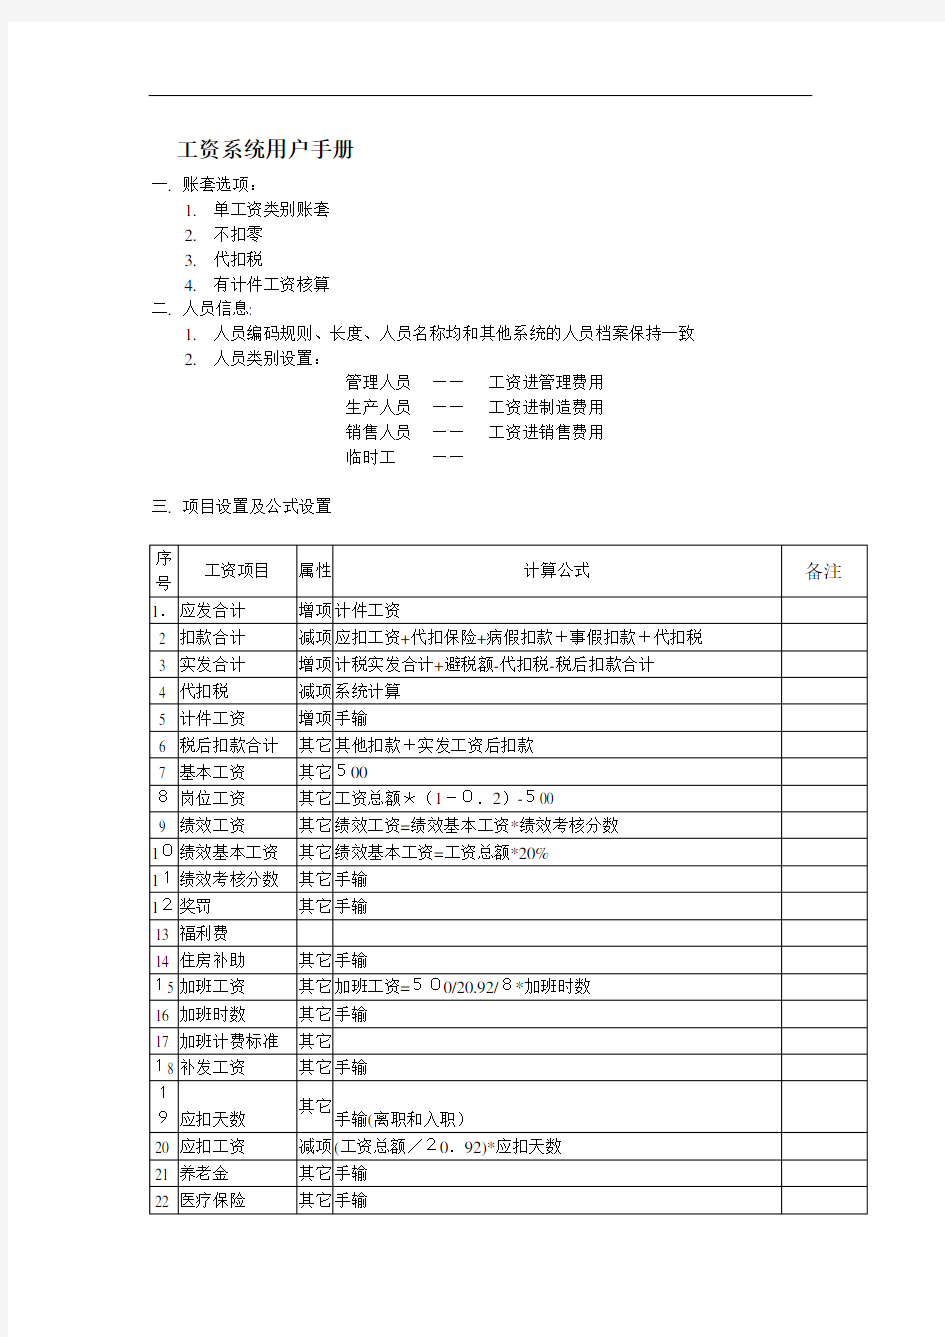 北京某科技公司工资管理操作手册